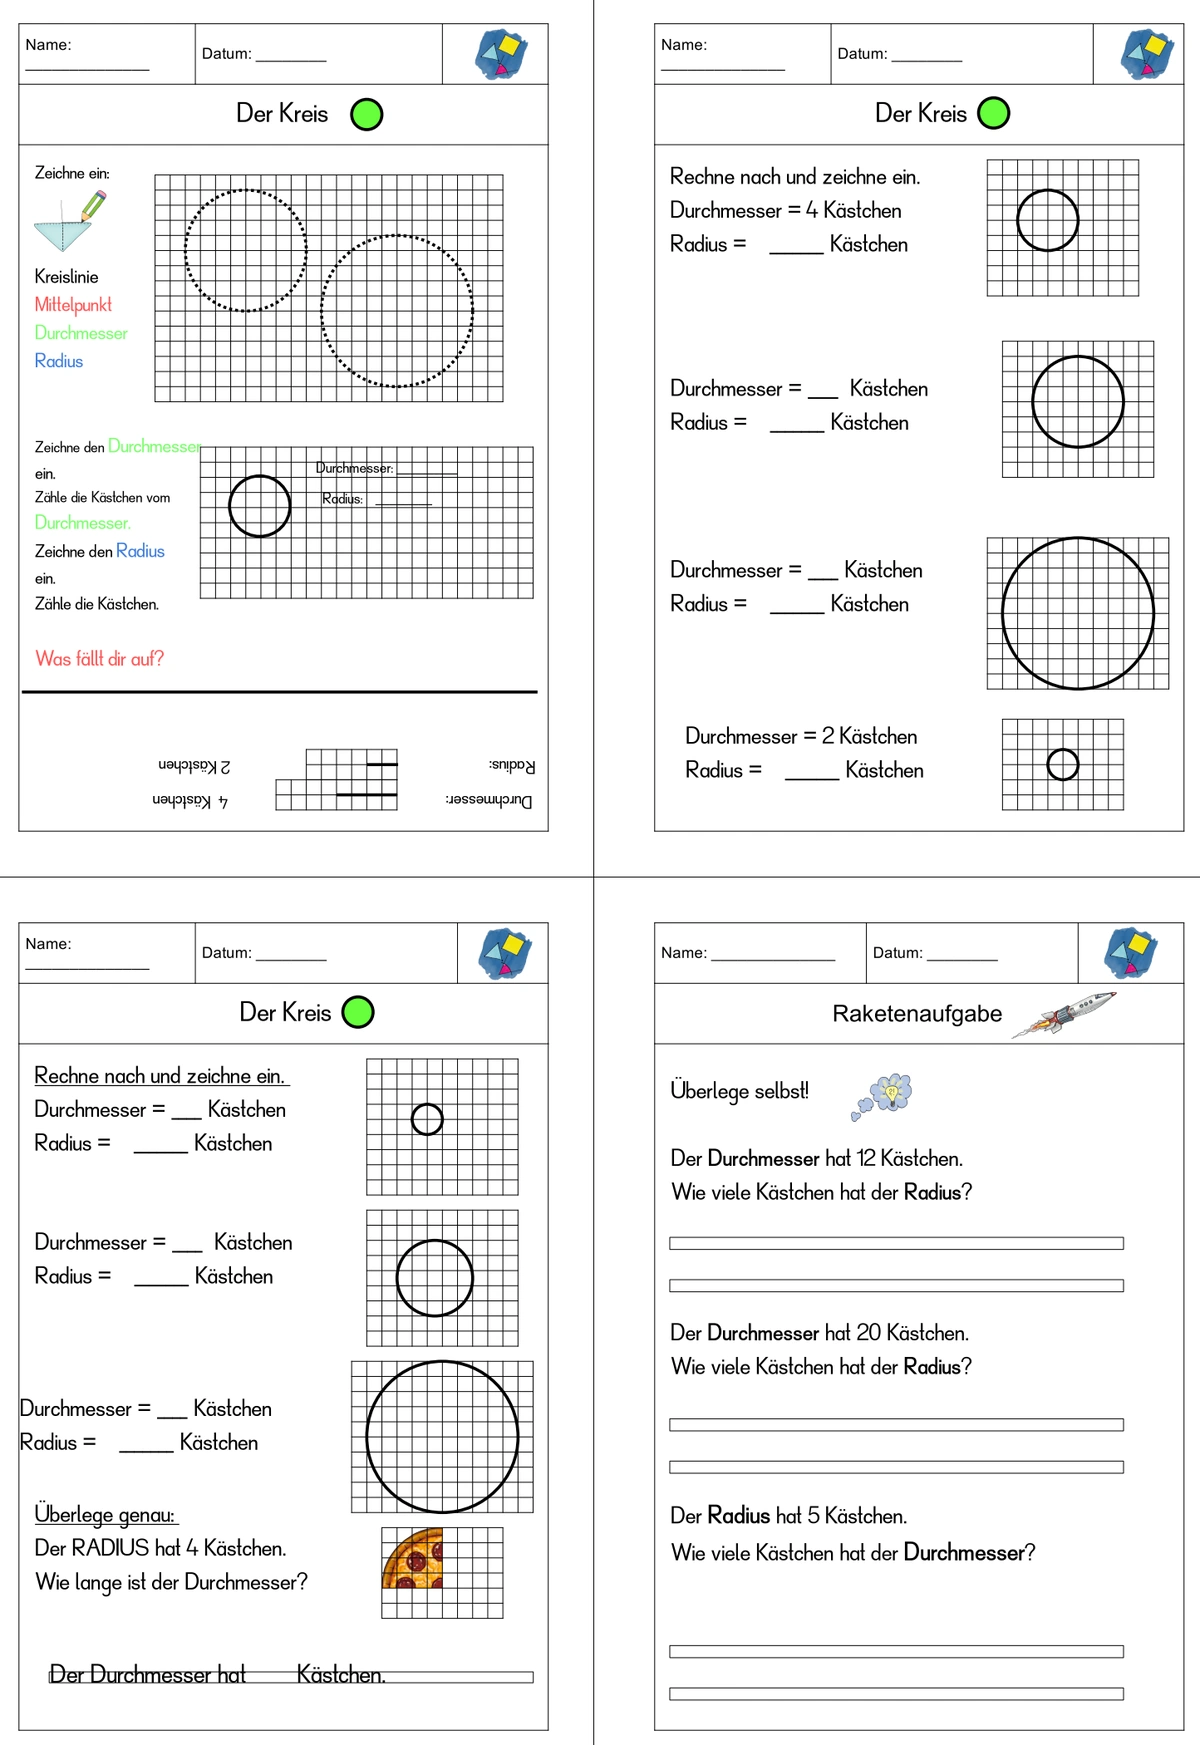 kreis merkwoerter radius durchmesser • Kreis - Merkwörter und Flächenformen